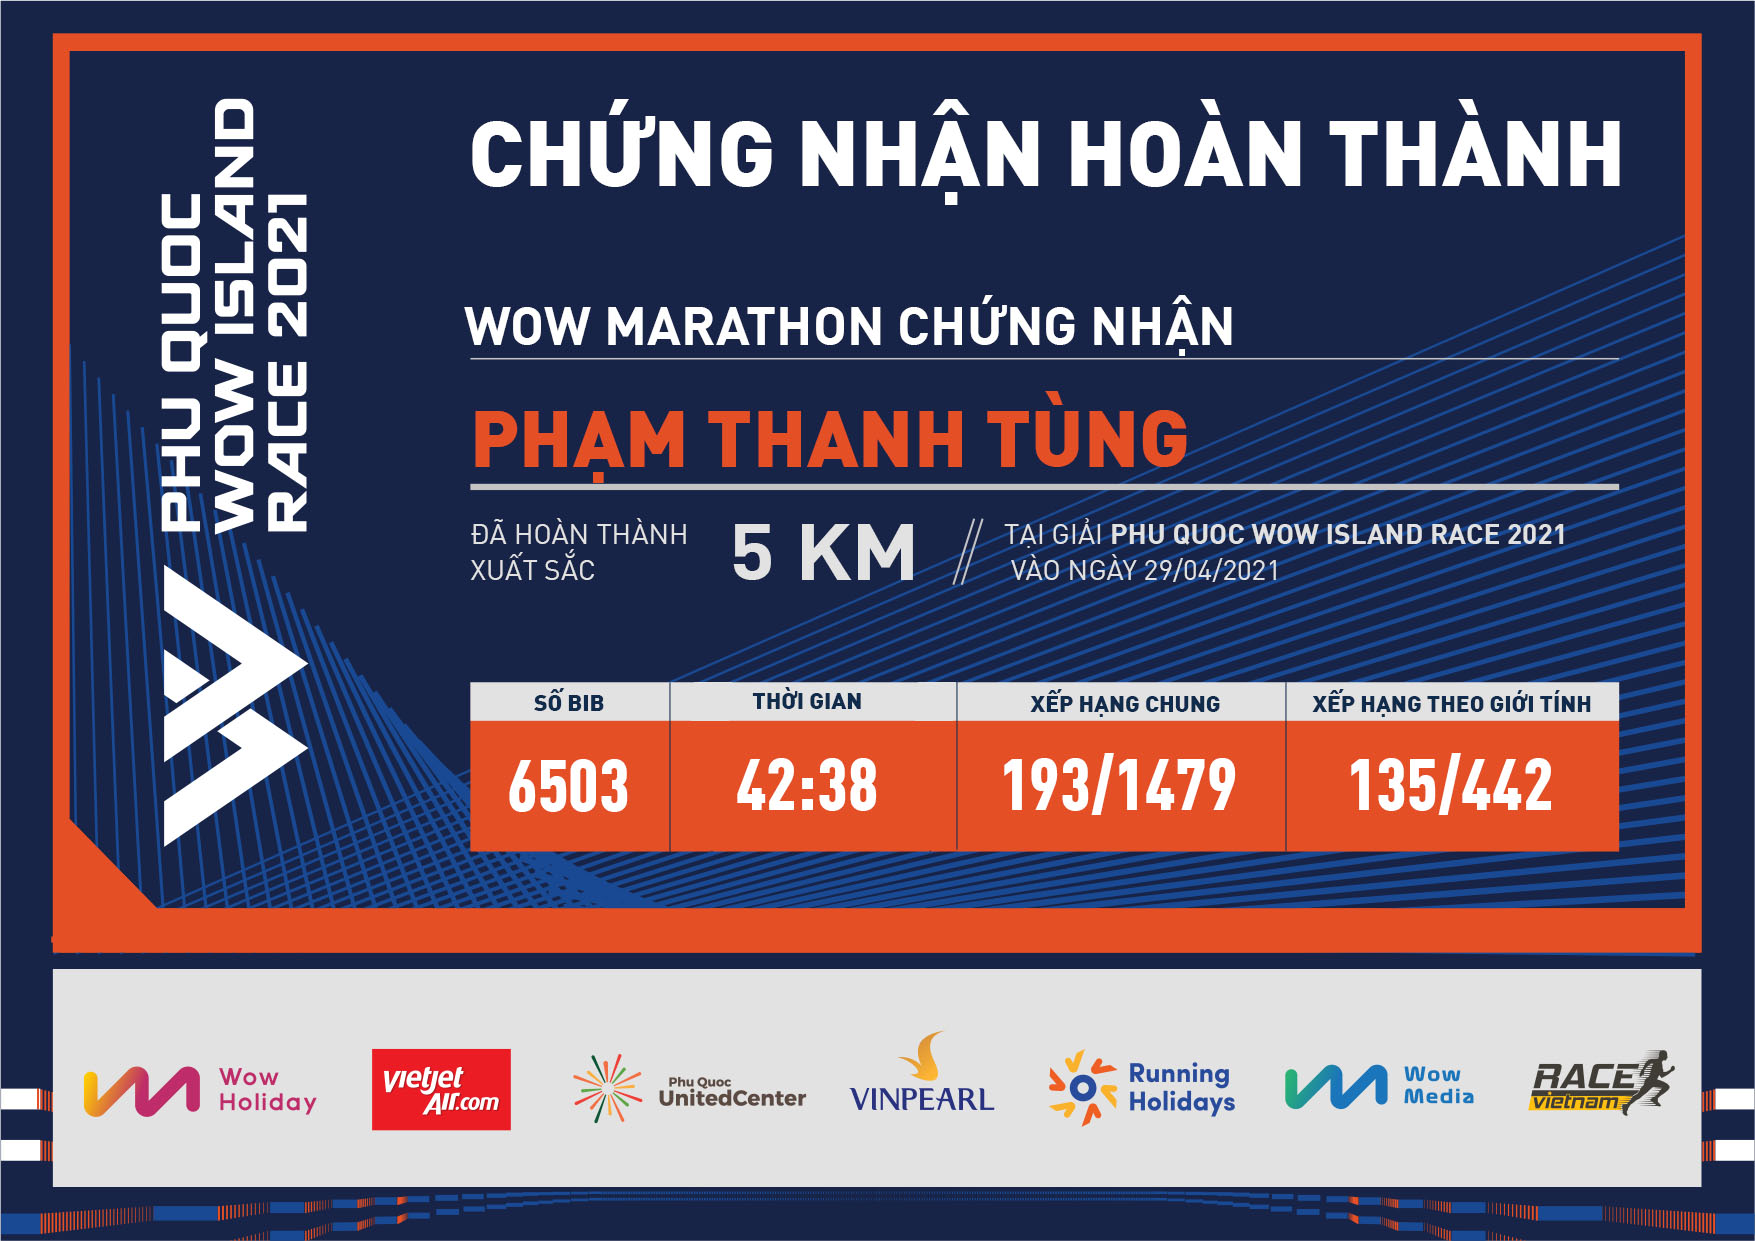 6503 - Phạm Thanh Tùng